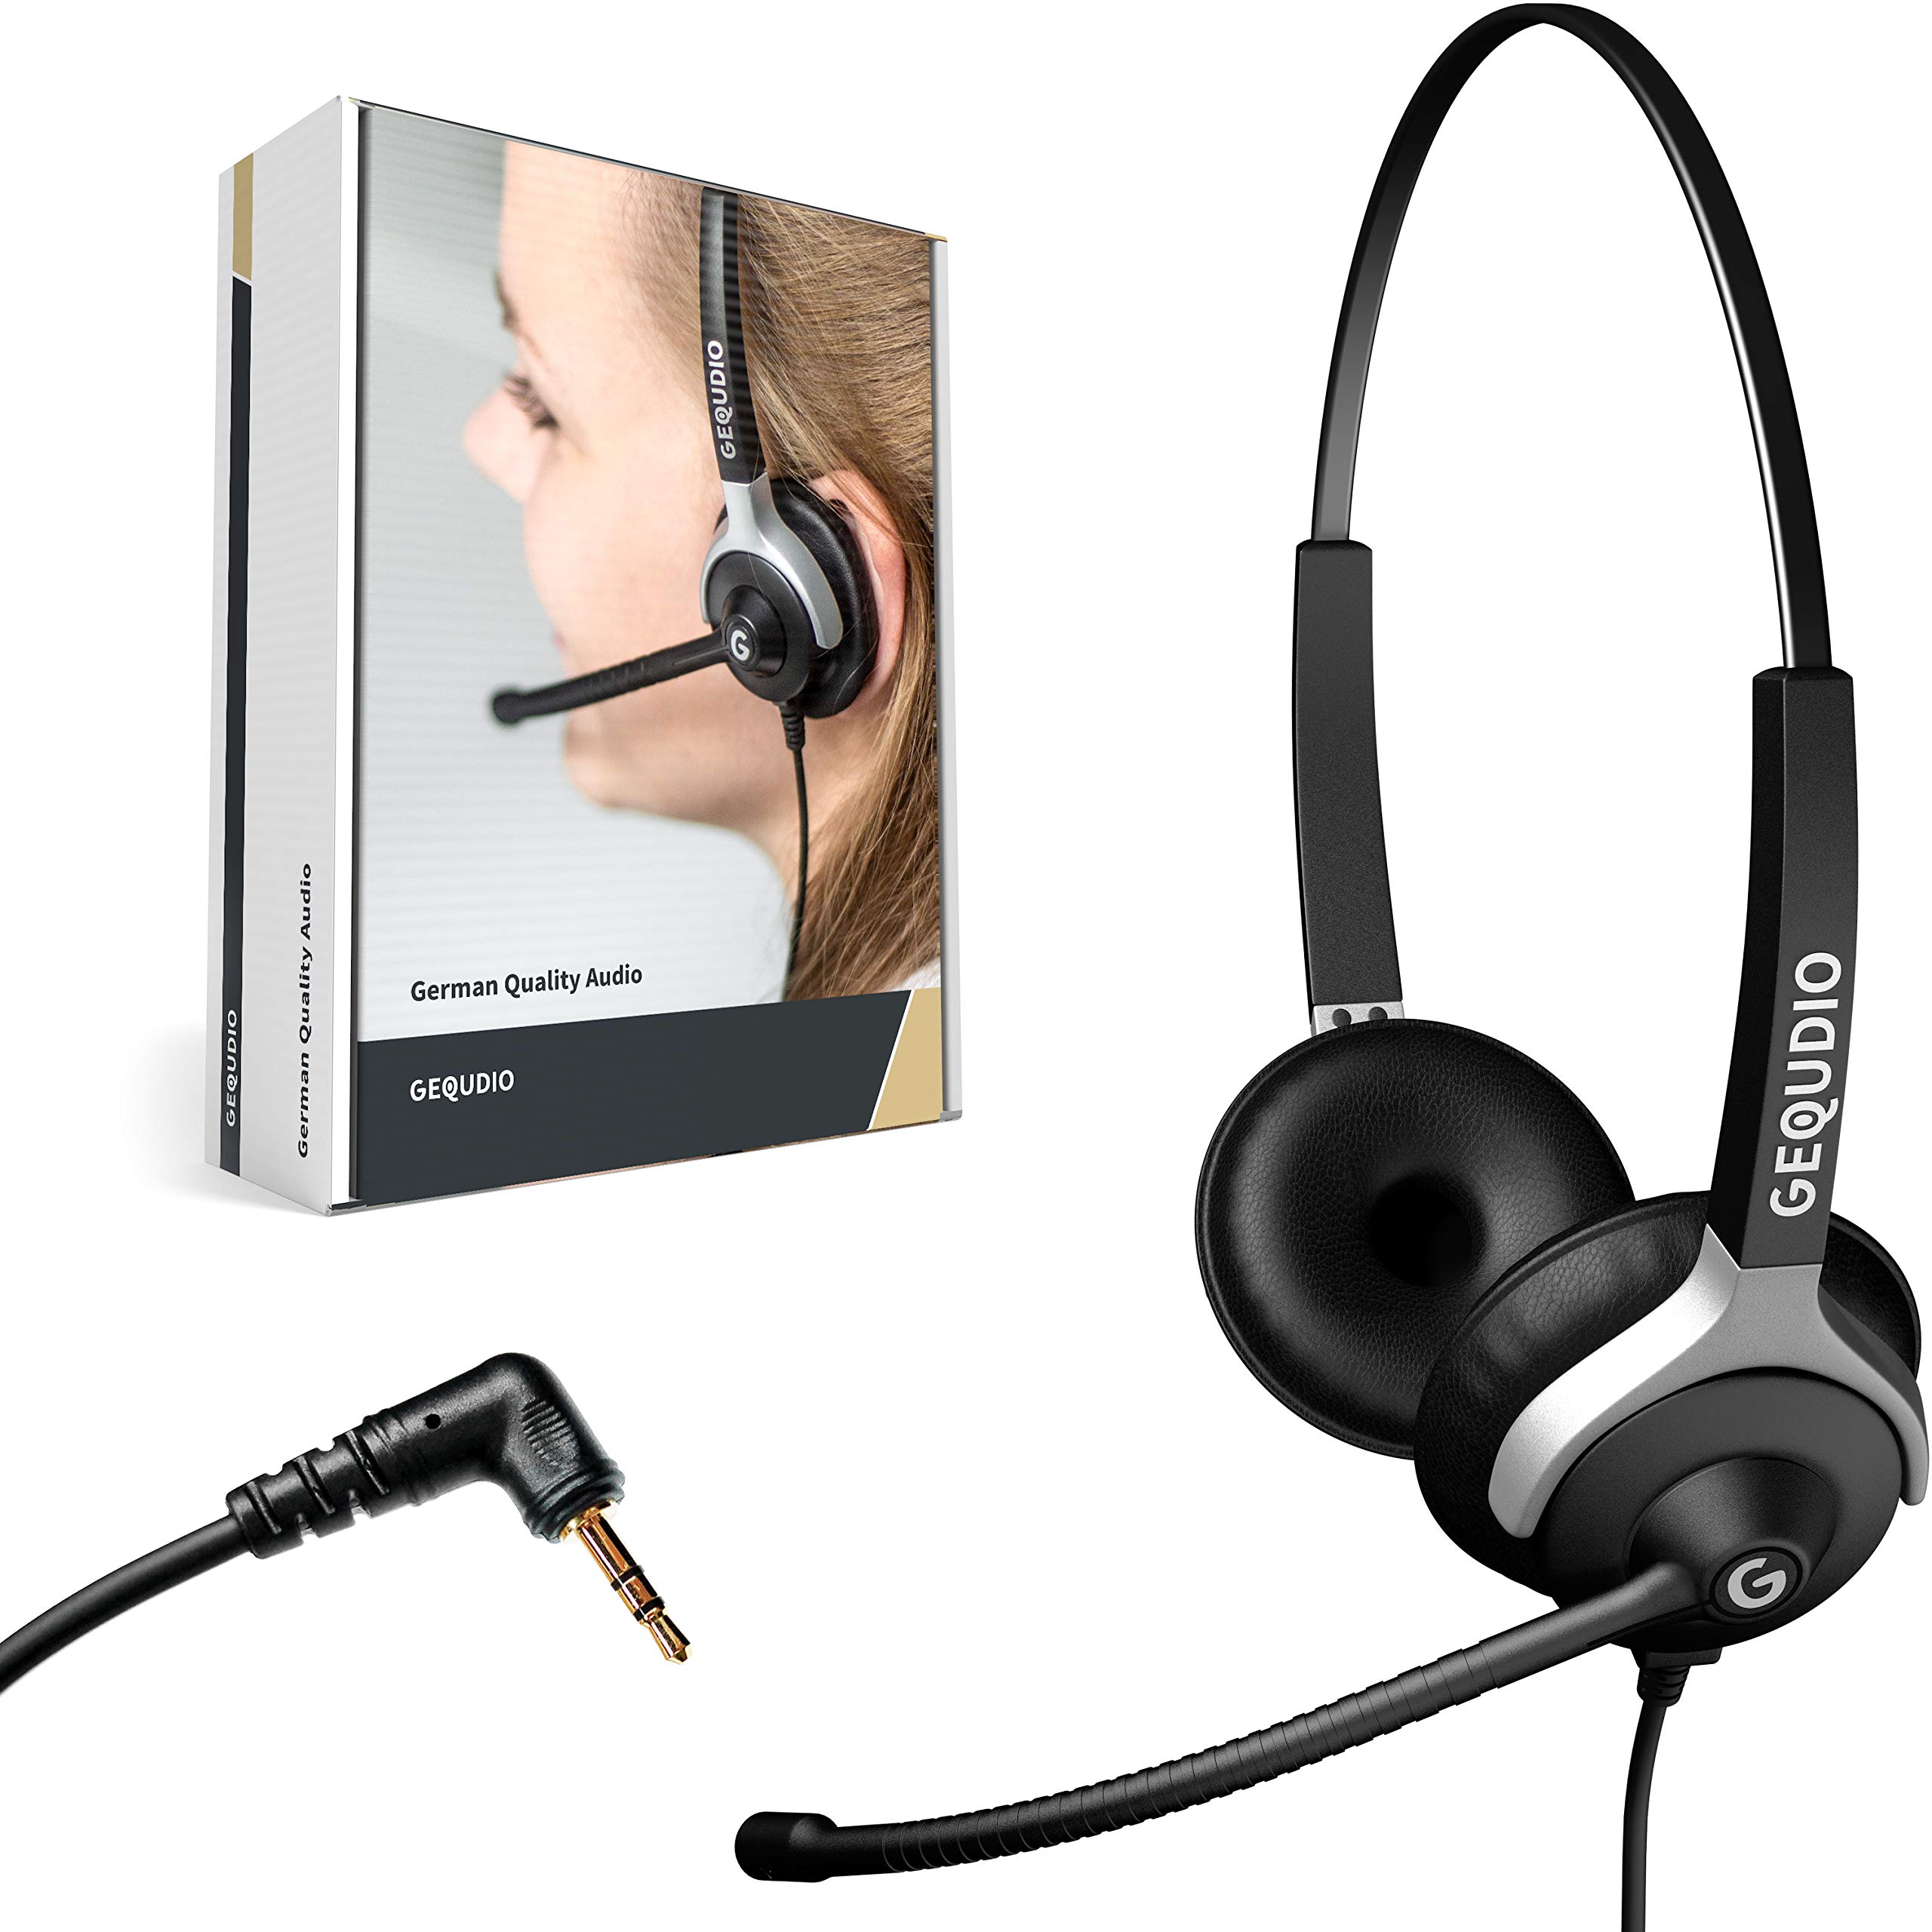 GEQUDIO Headset mit 2,5mm Klinke kompatibel mit Gigaset, Panasonic DECT Schnurlostelefon - Kopfhörer & Mikrofon mit Ersatz Polster - besonders leicht 80g (2-Ohr)